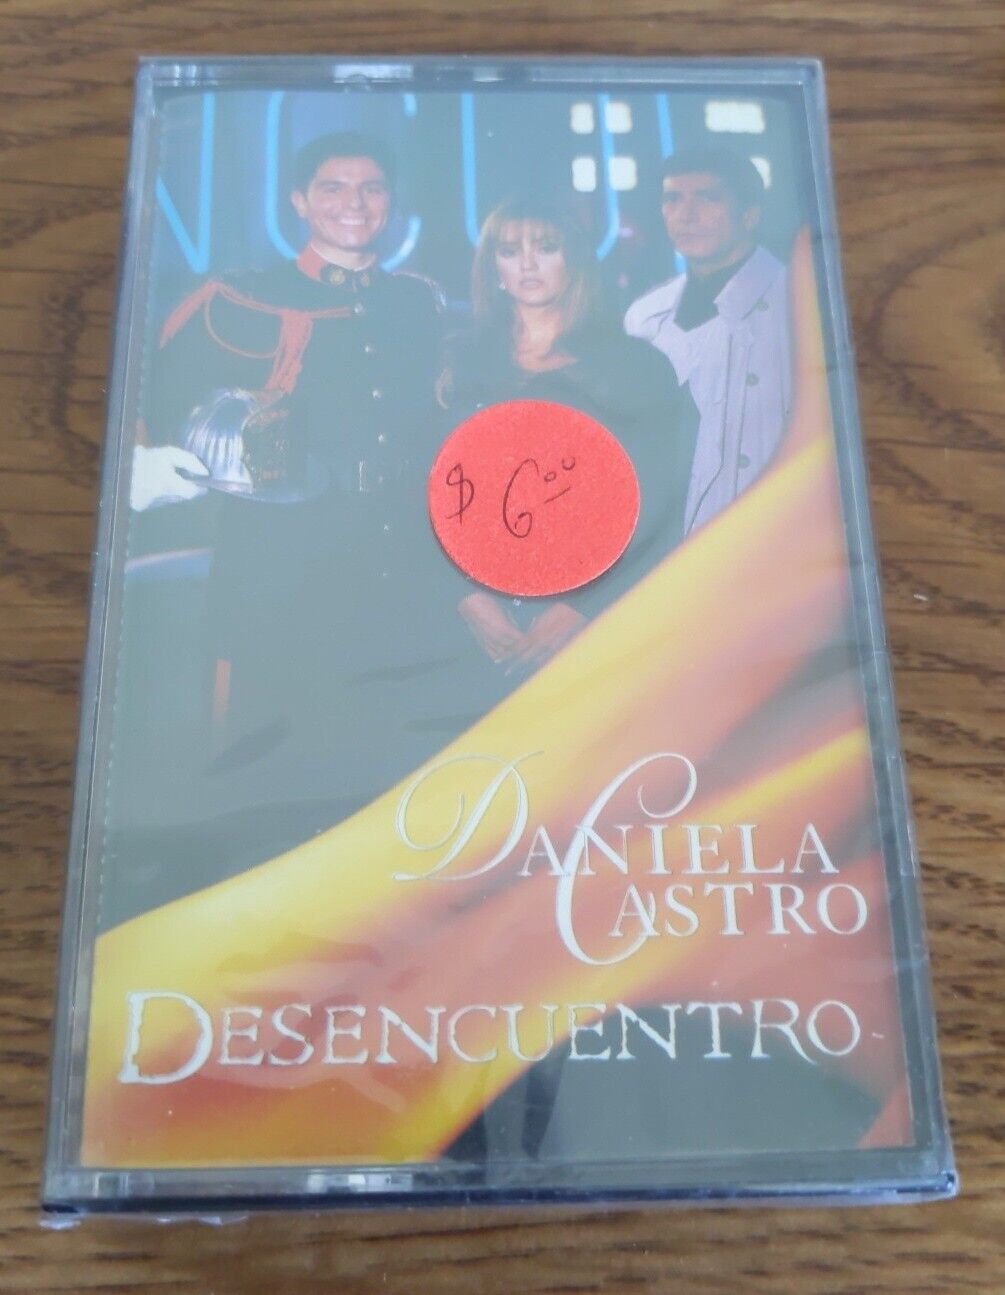 Vintage Rare New Cassette Daniela Castro Desencuentro